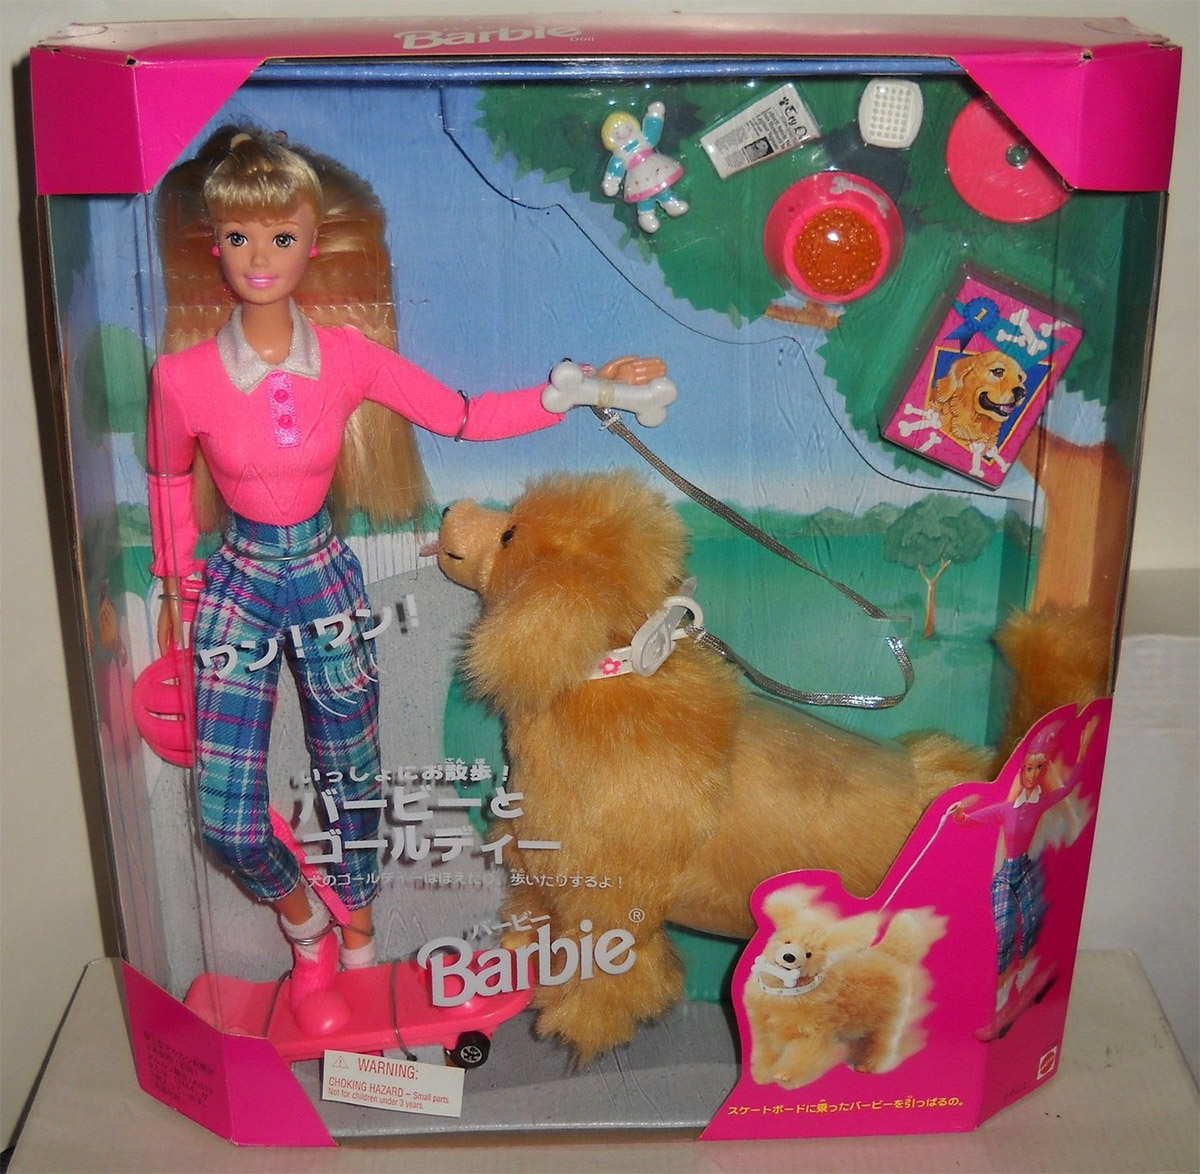 barbie ginger